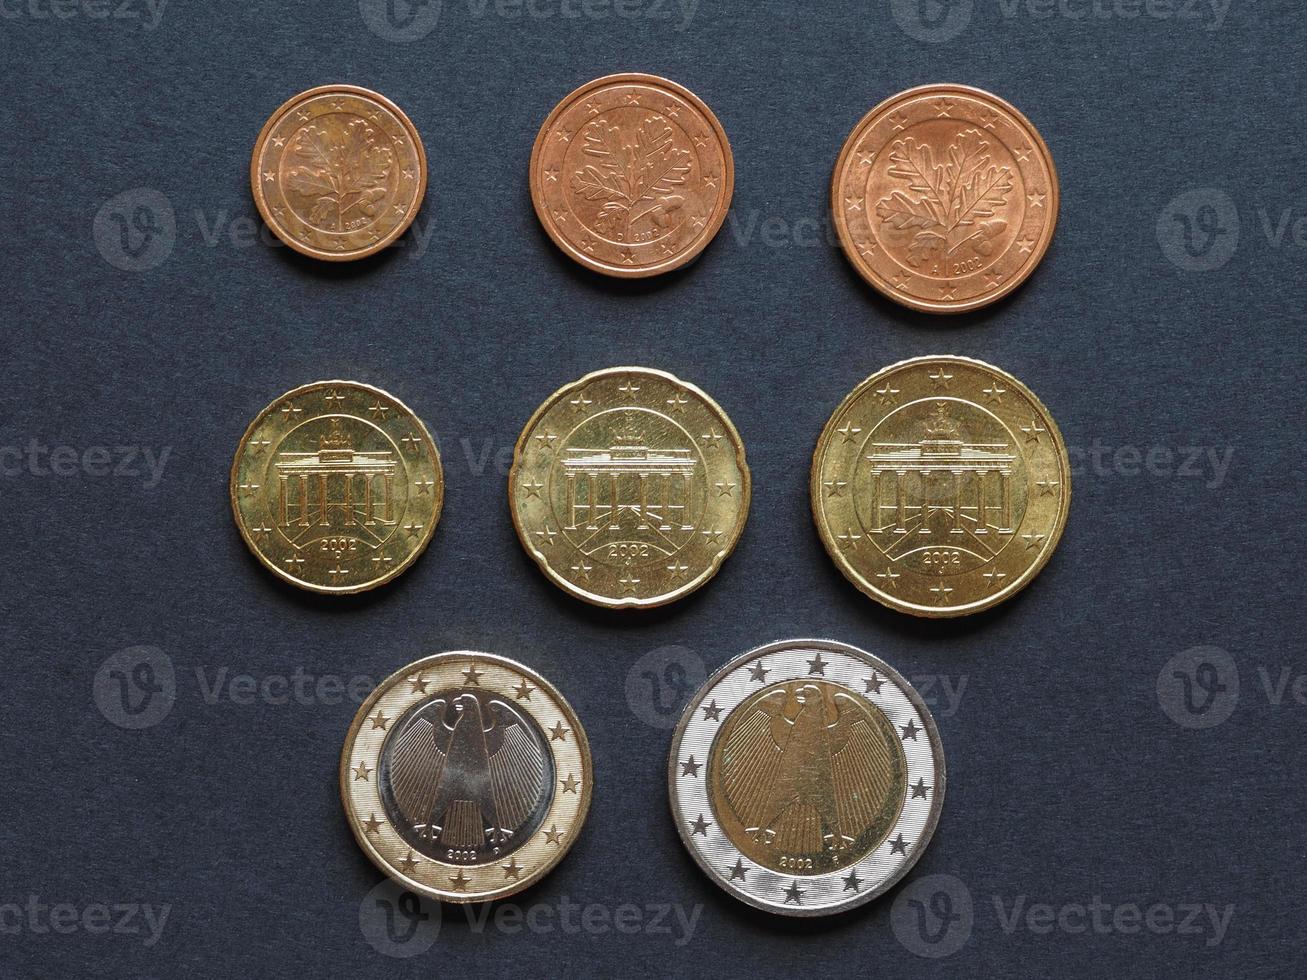 colocação plana de moedas de euro foto